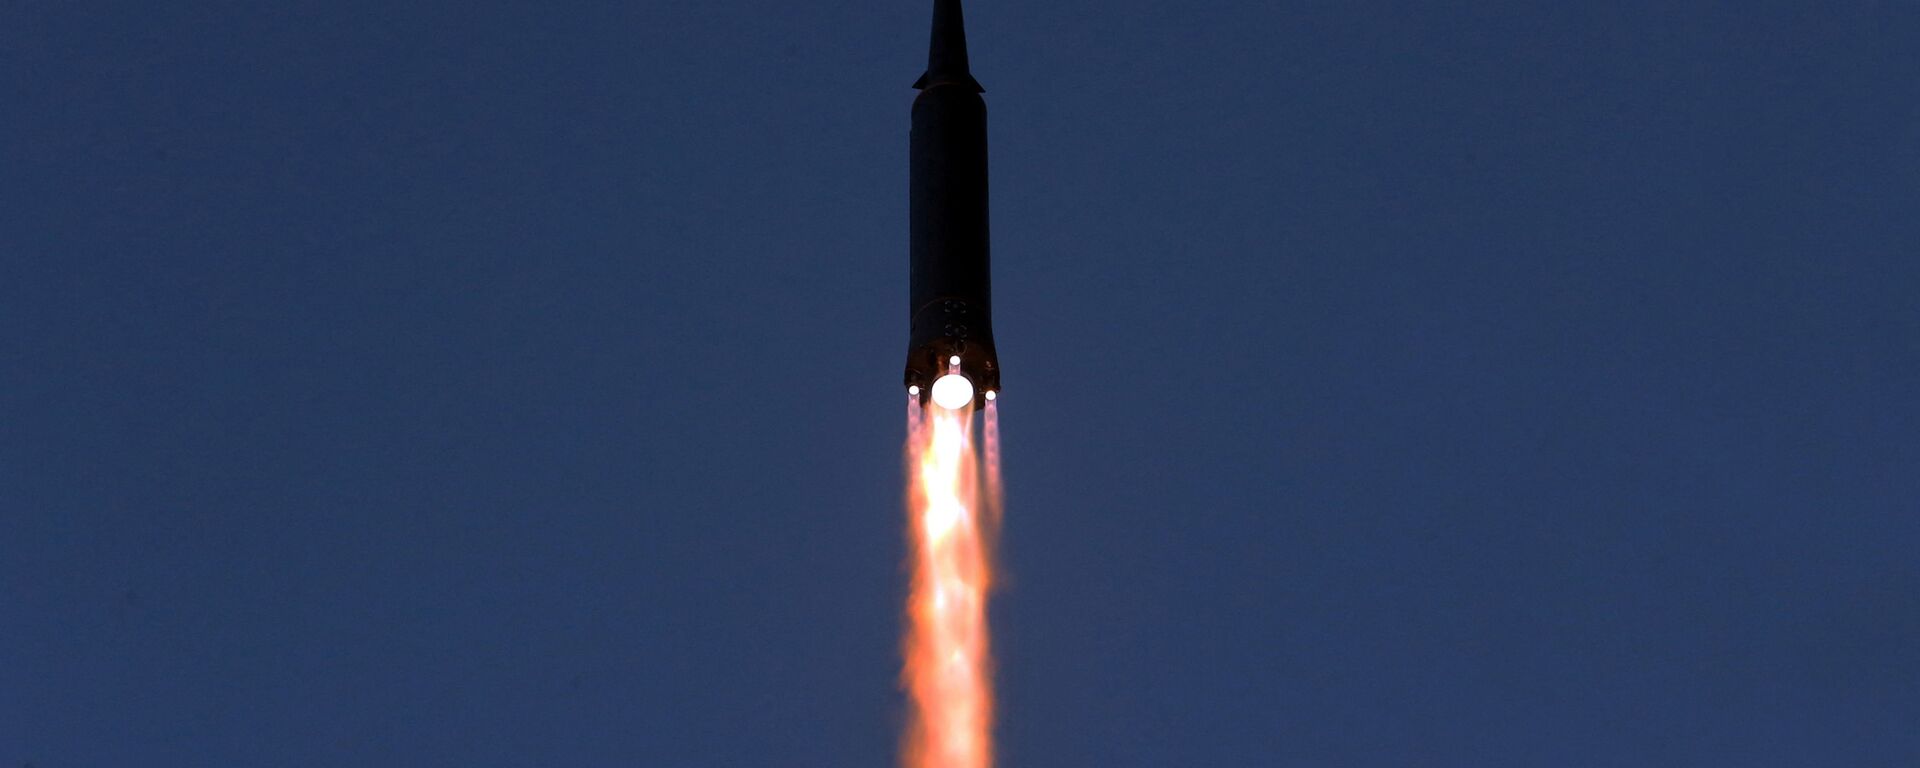 اختبار إطلاق صاروخ تفوق سرعته سرعة الصوت في كوريا الشمالية، 11 يناير 2022  - سبوتنيك عربي, 1920, 26.01.2022